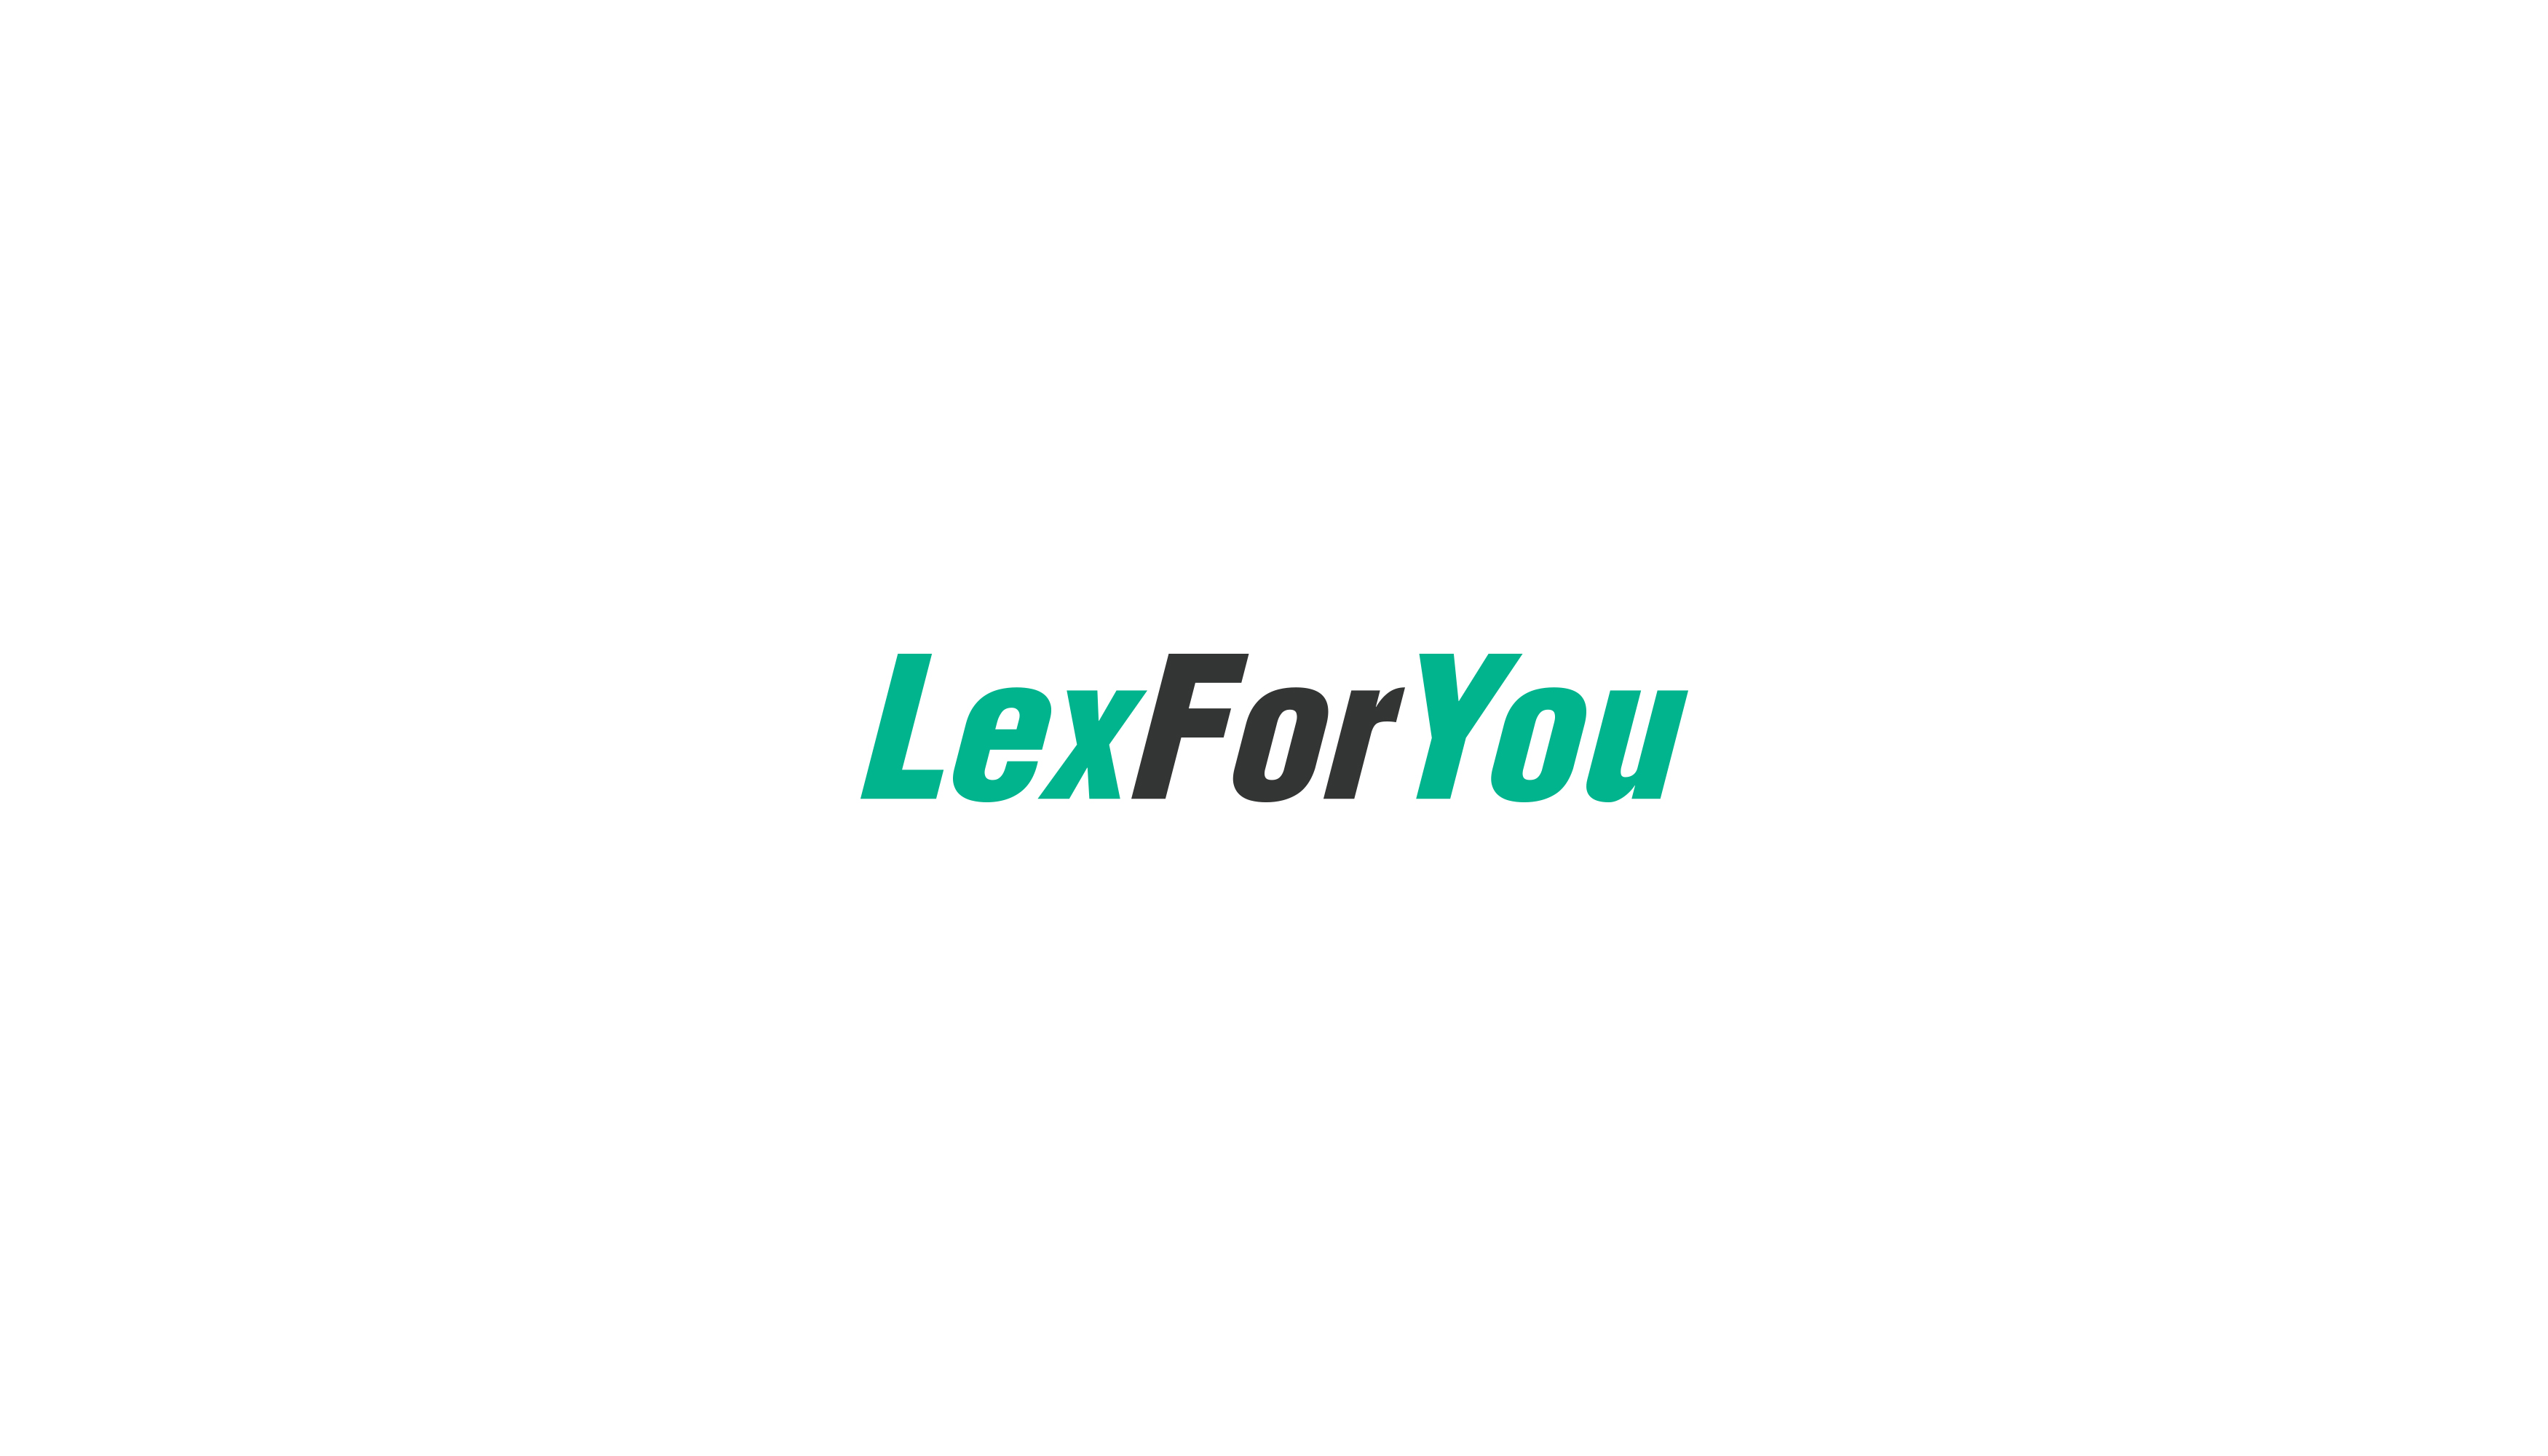 Lex For You Design #10